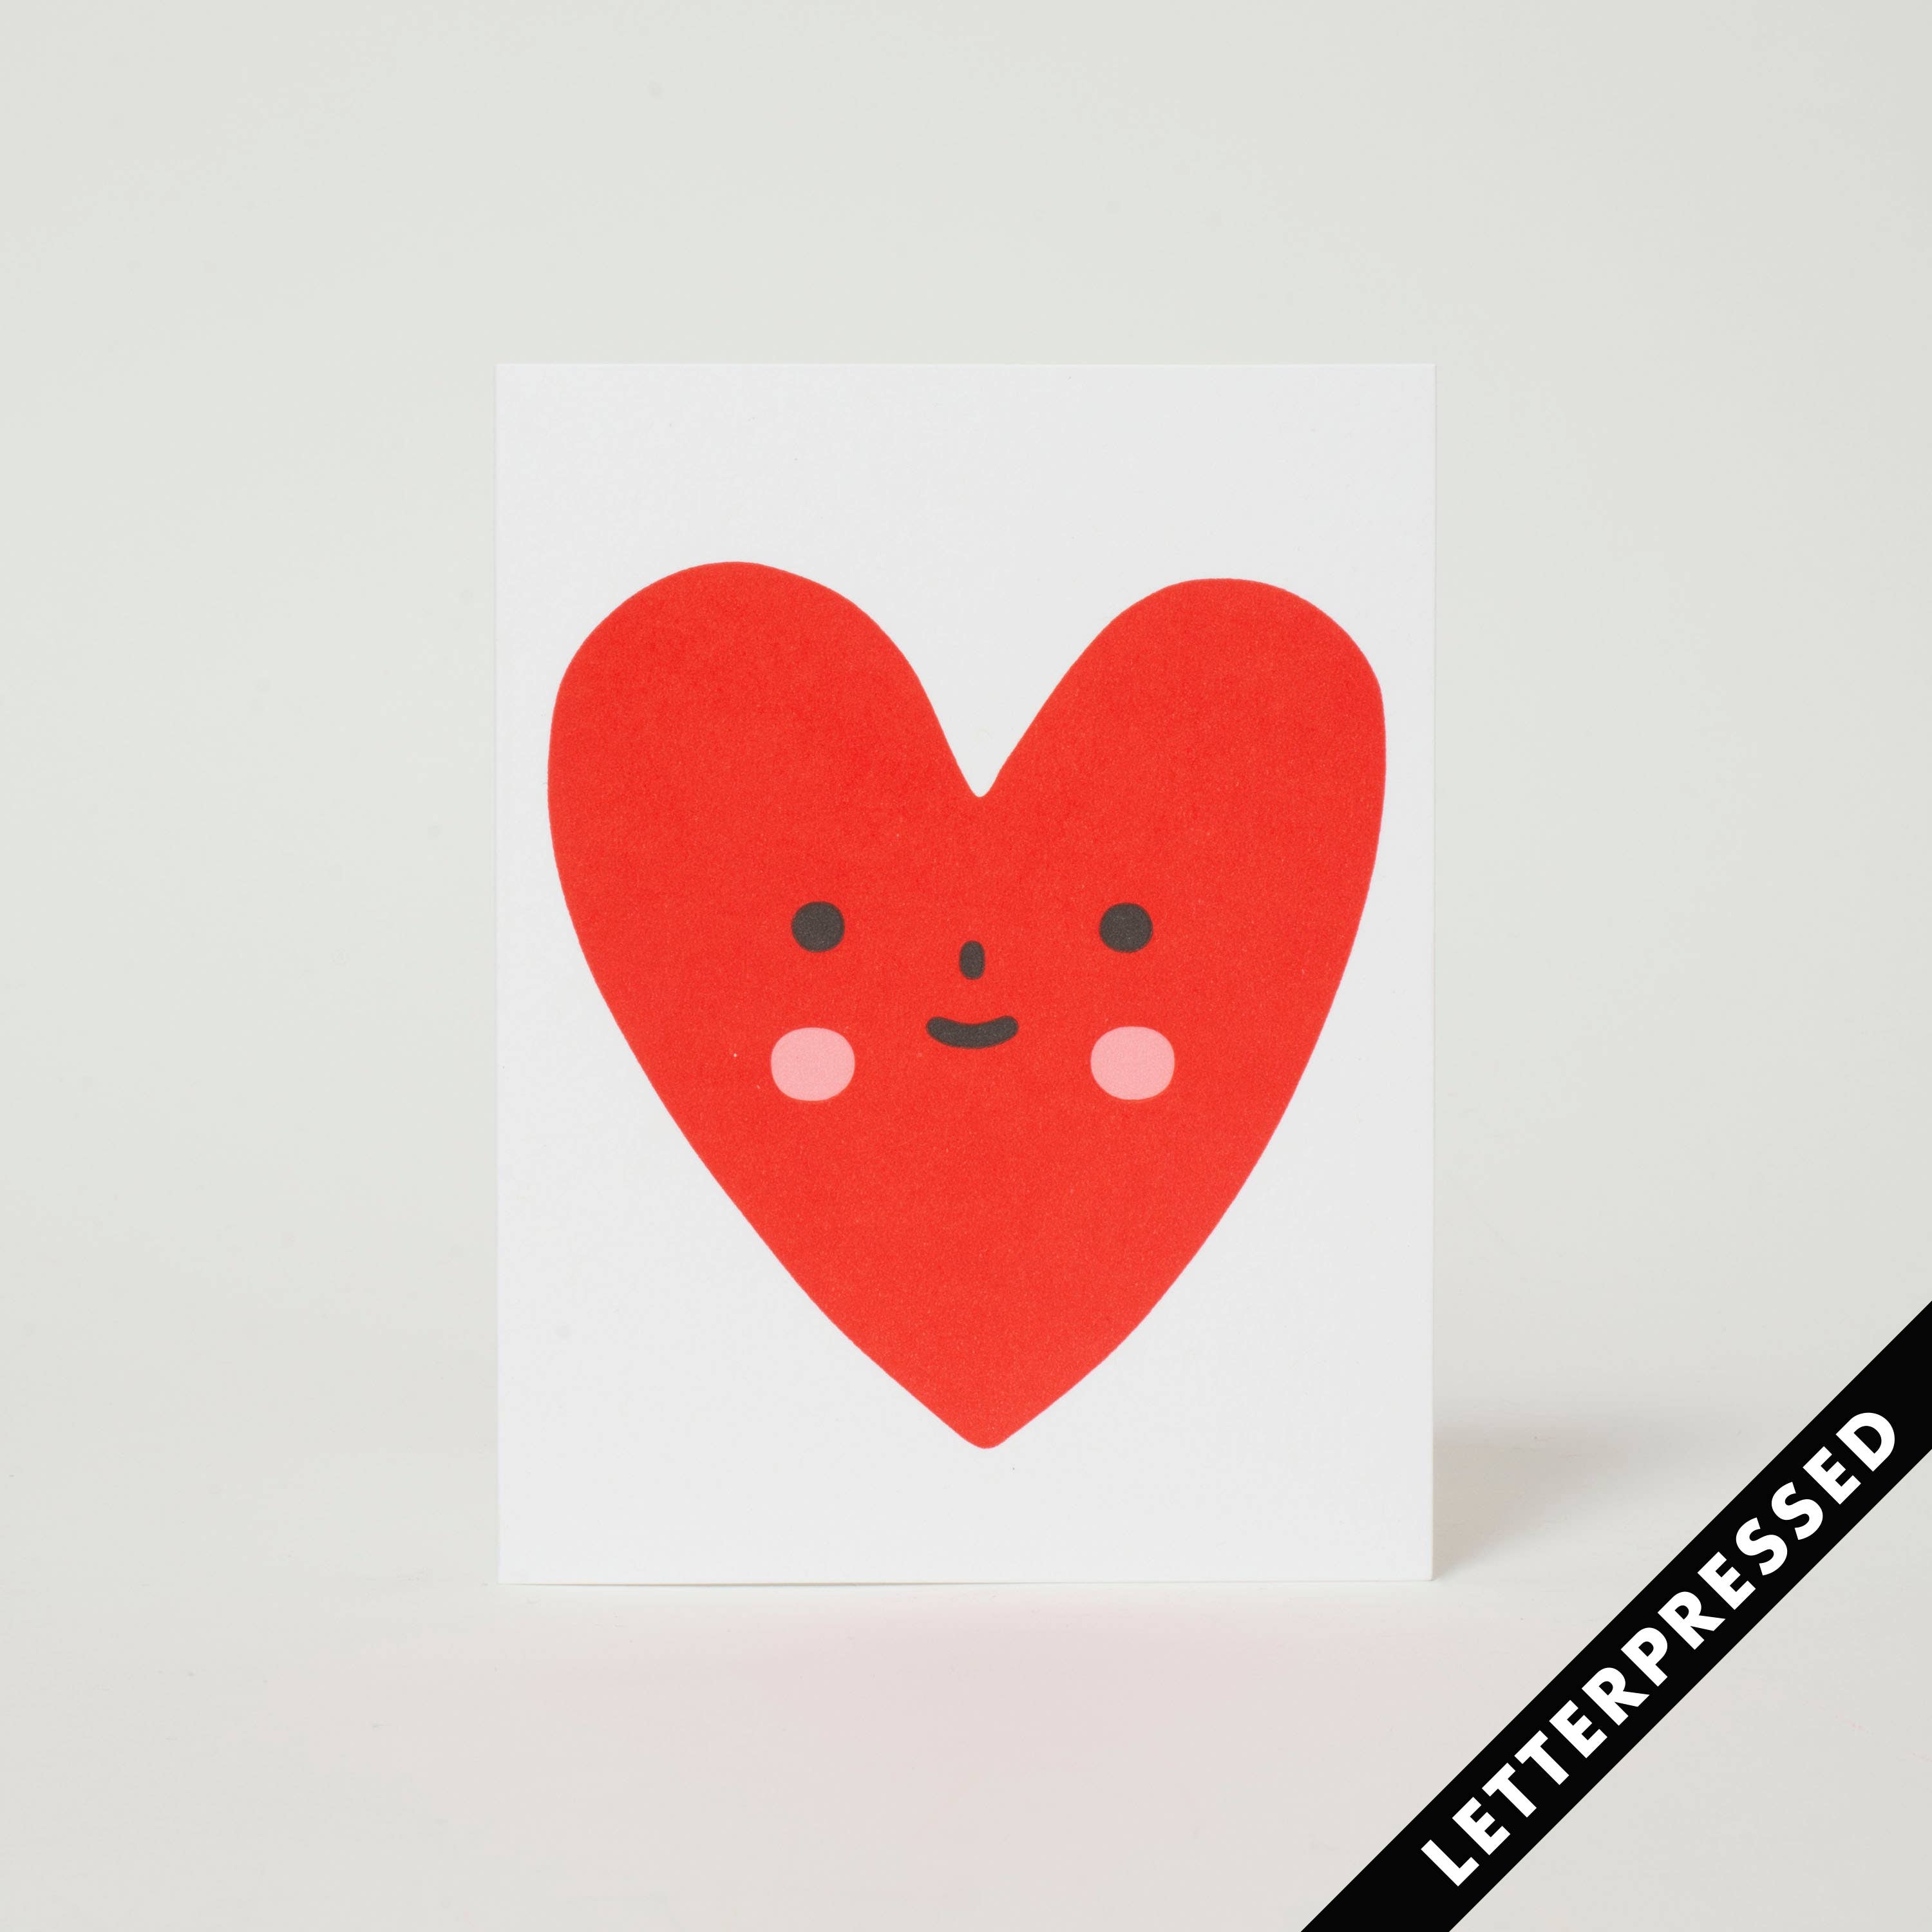 Heart Friend Card by Suzy Ultman